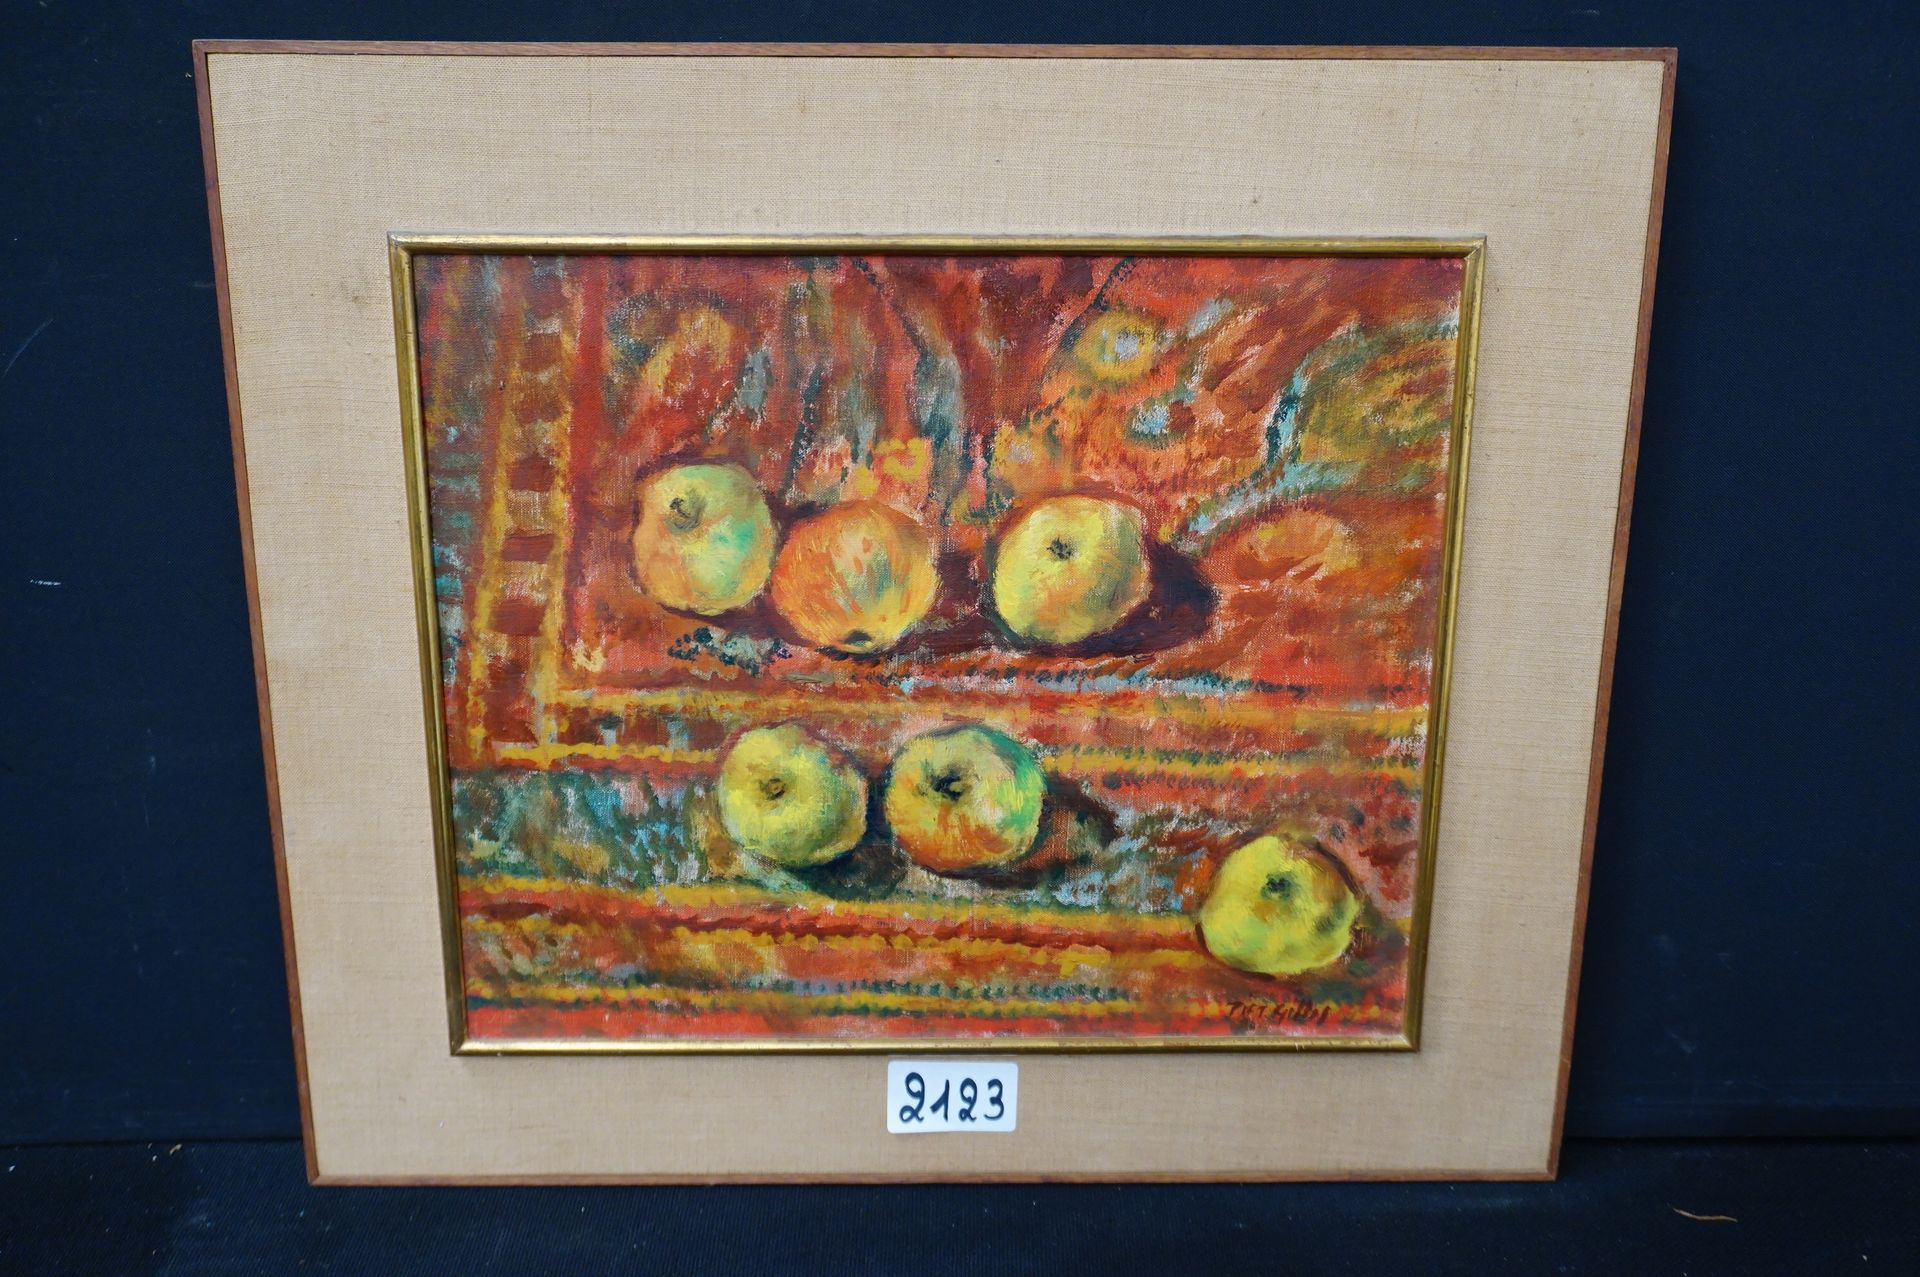 PIET GILLIS (1887 - 1956) "苹果的静物" - 布面油画 - 已签名 - 38 x 46 cm